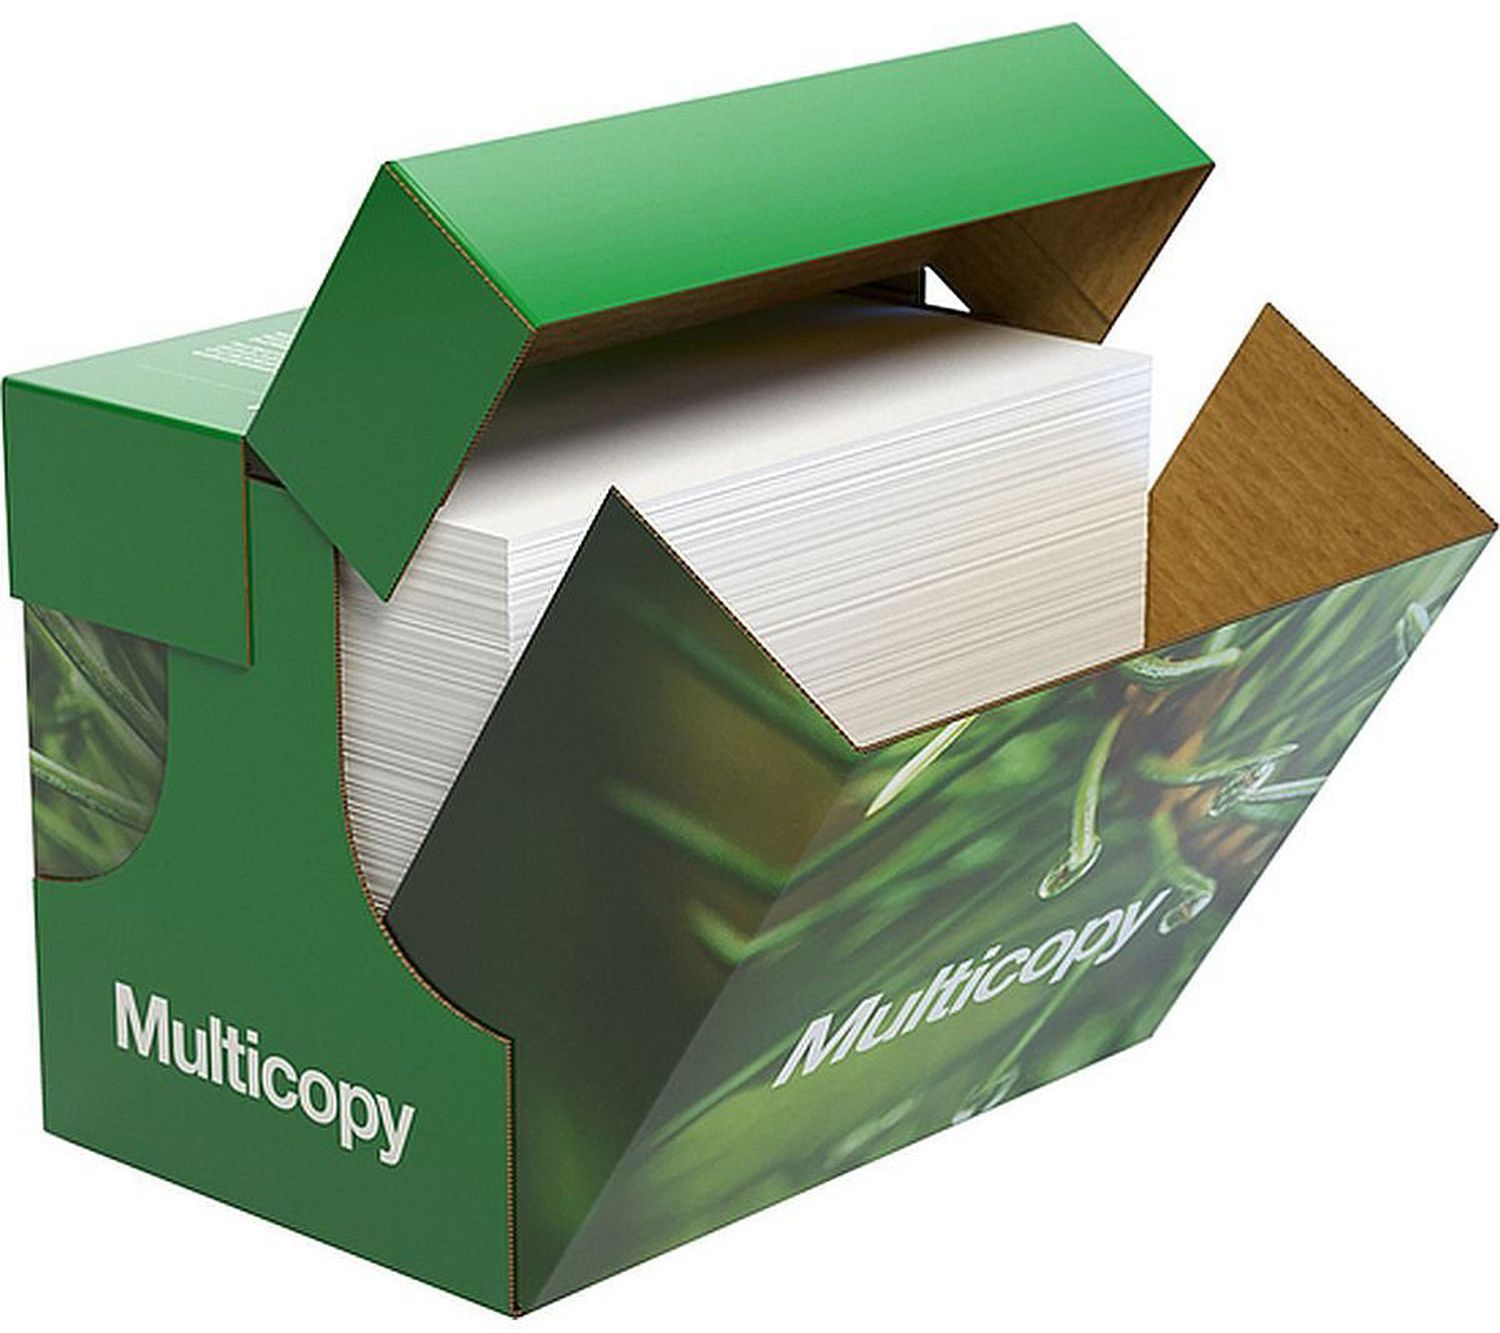 Kopierpapier Multicopy 2100005142, DIN A4, 80 g/qm, hochweiß, 2.500 Blatt ungeriest im Karton